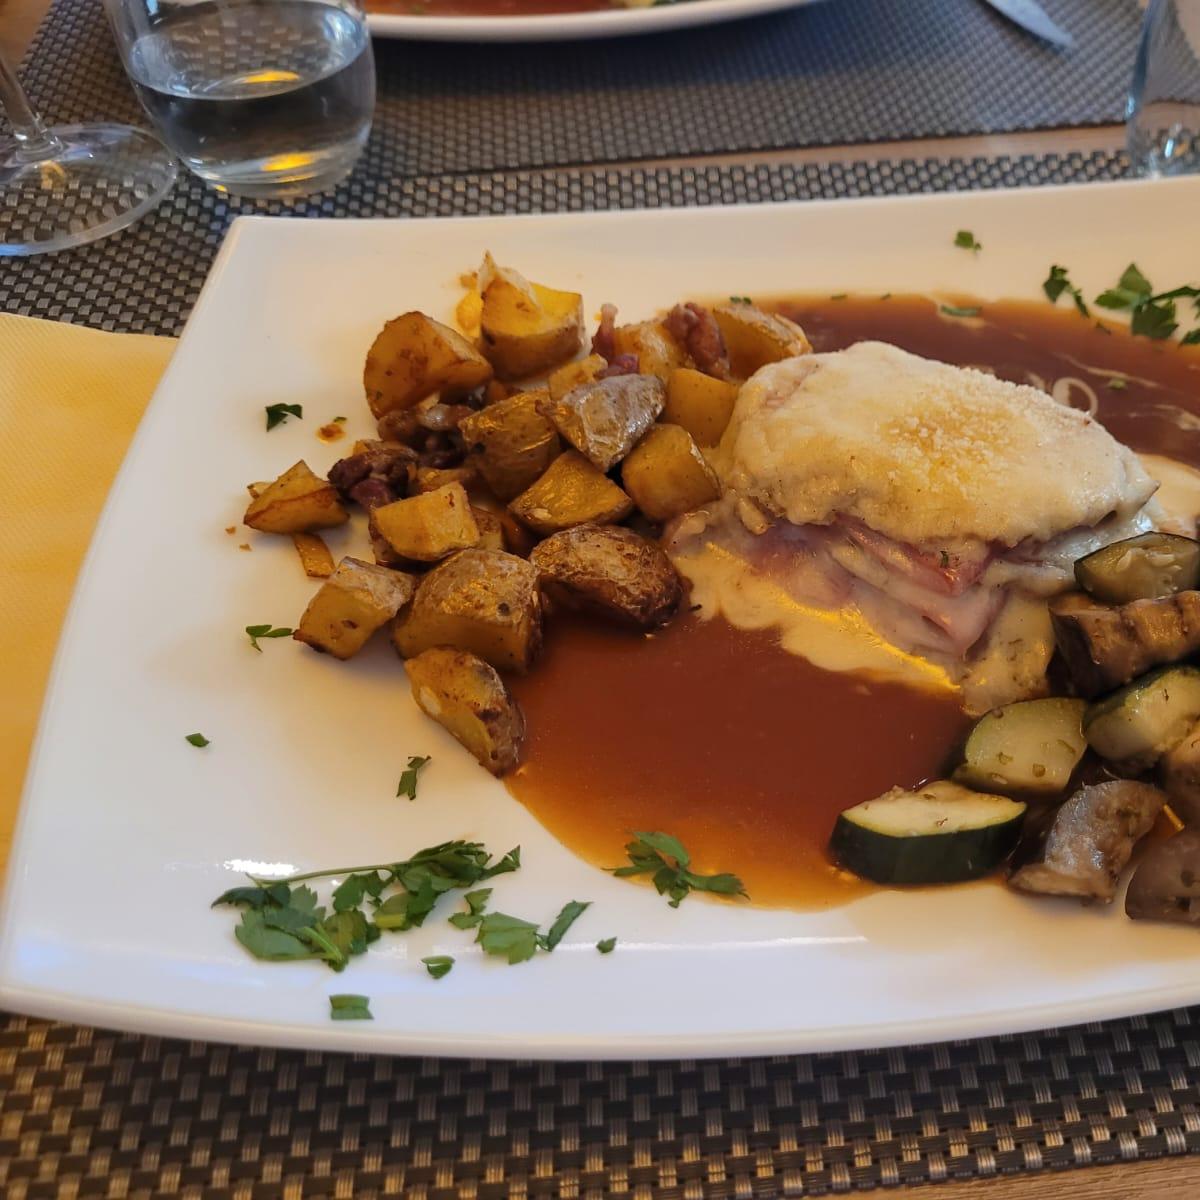 Restaurant "Brasserie Terres Rouges" in Esch-sur-Alzette